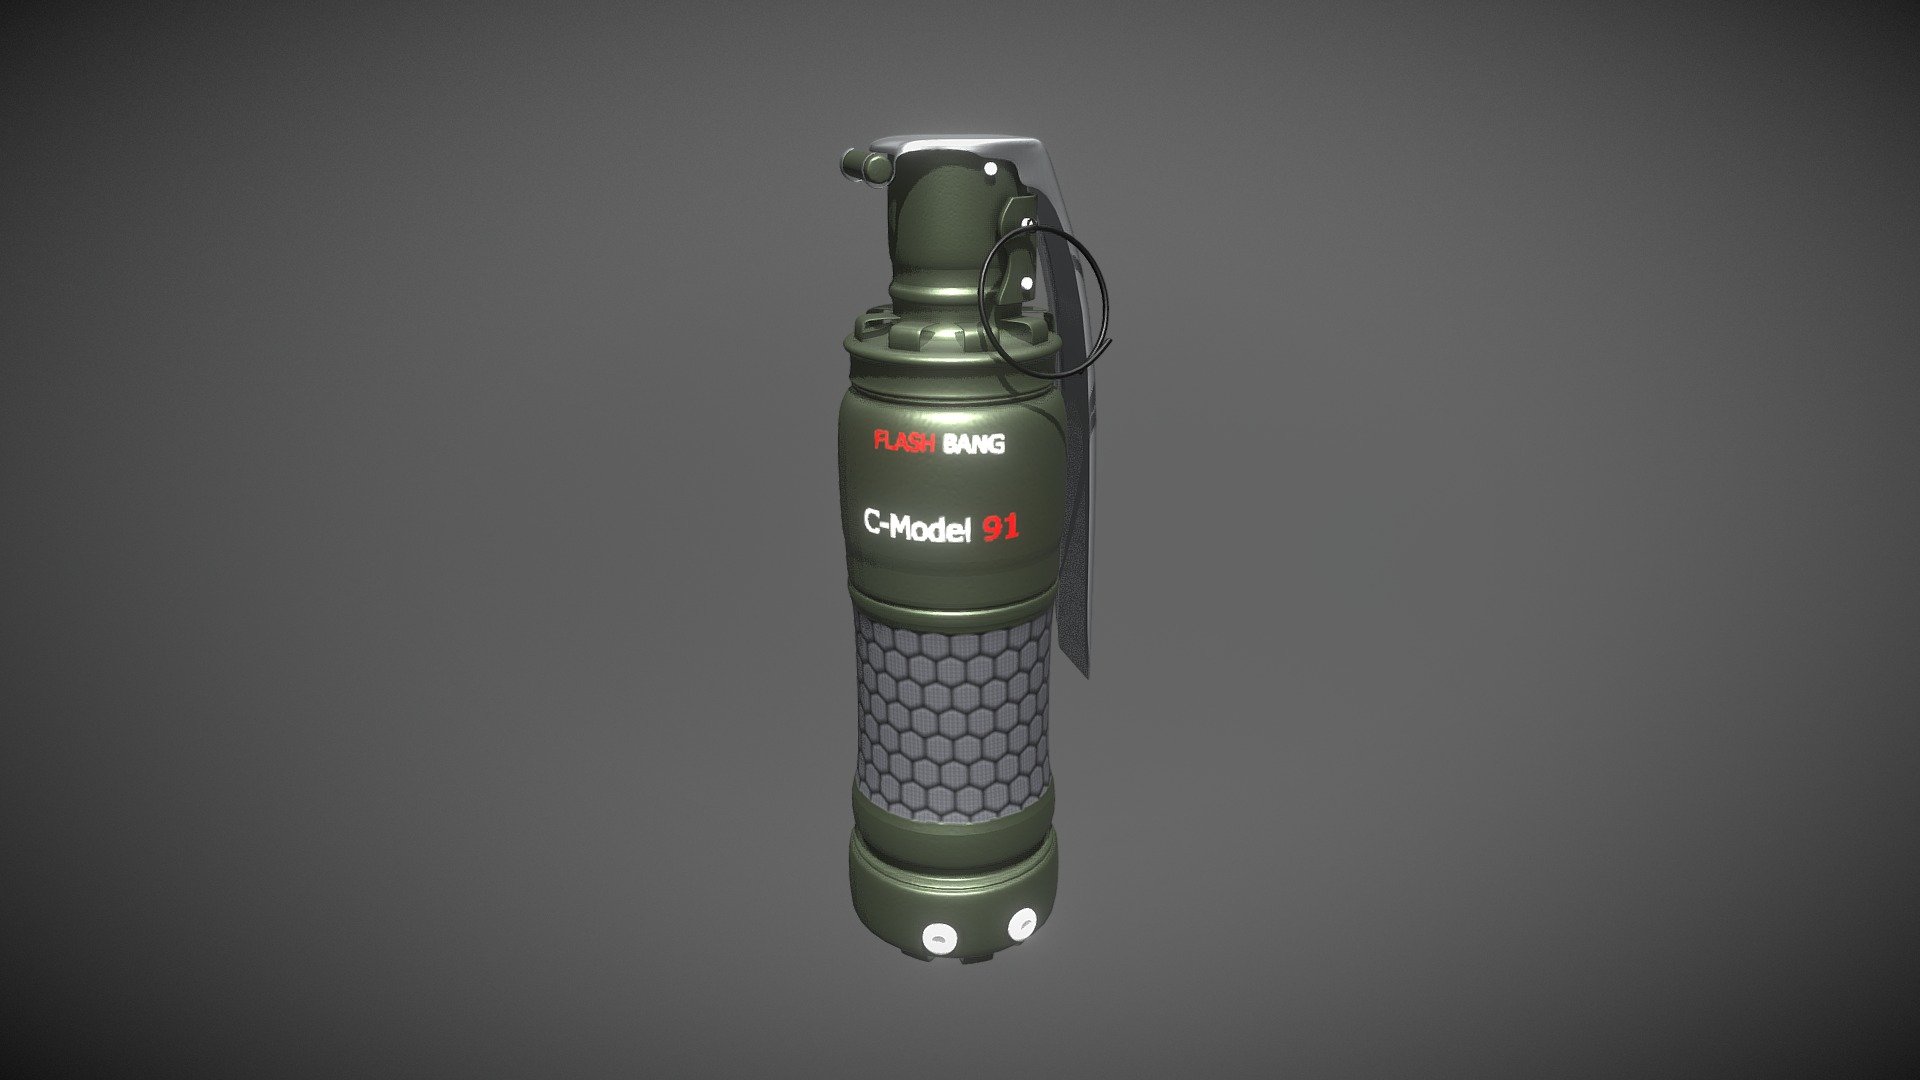 Flashbang grenade